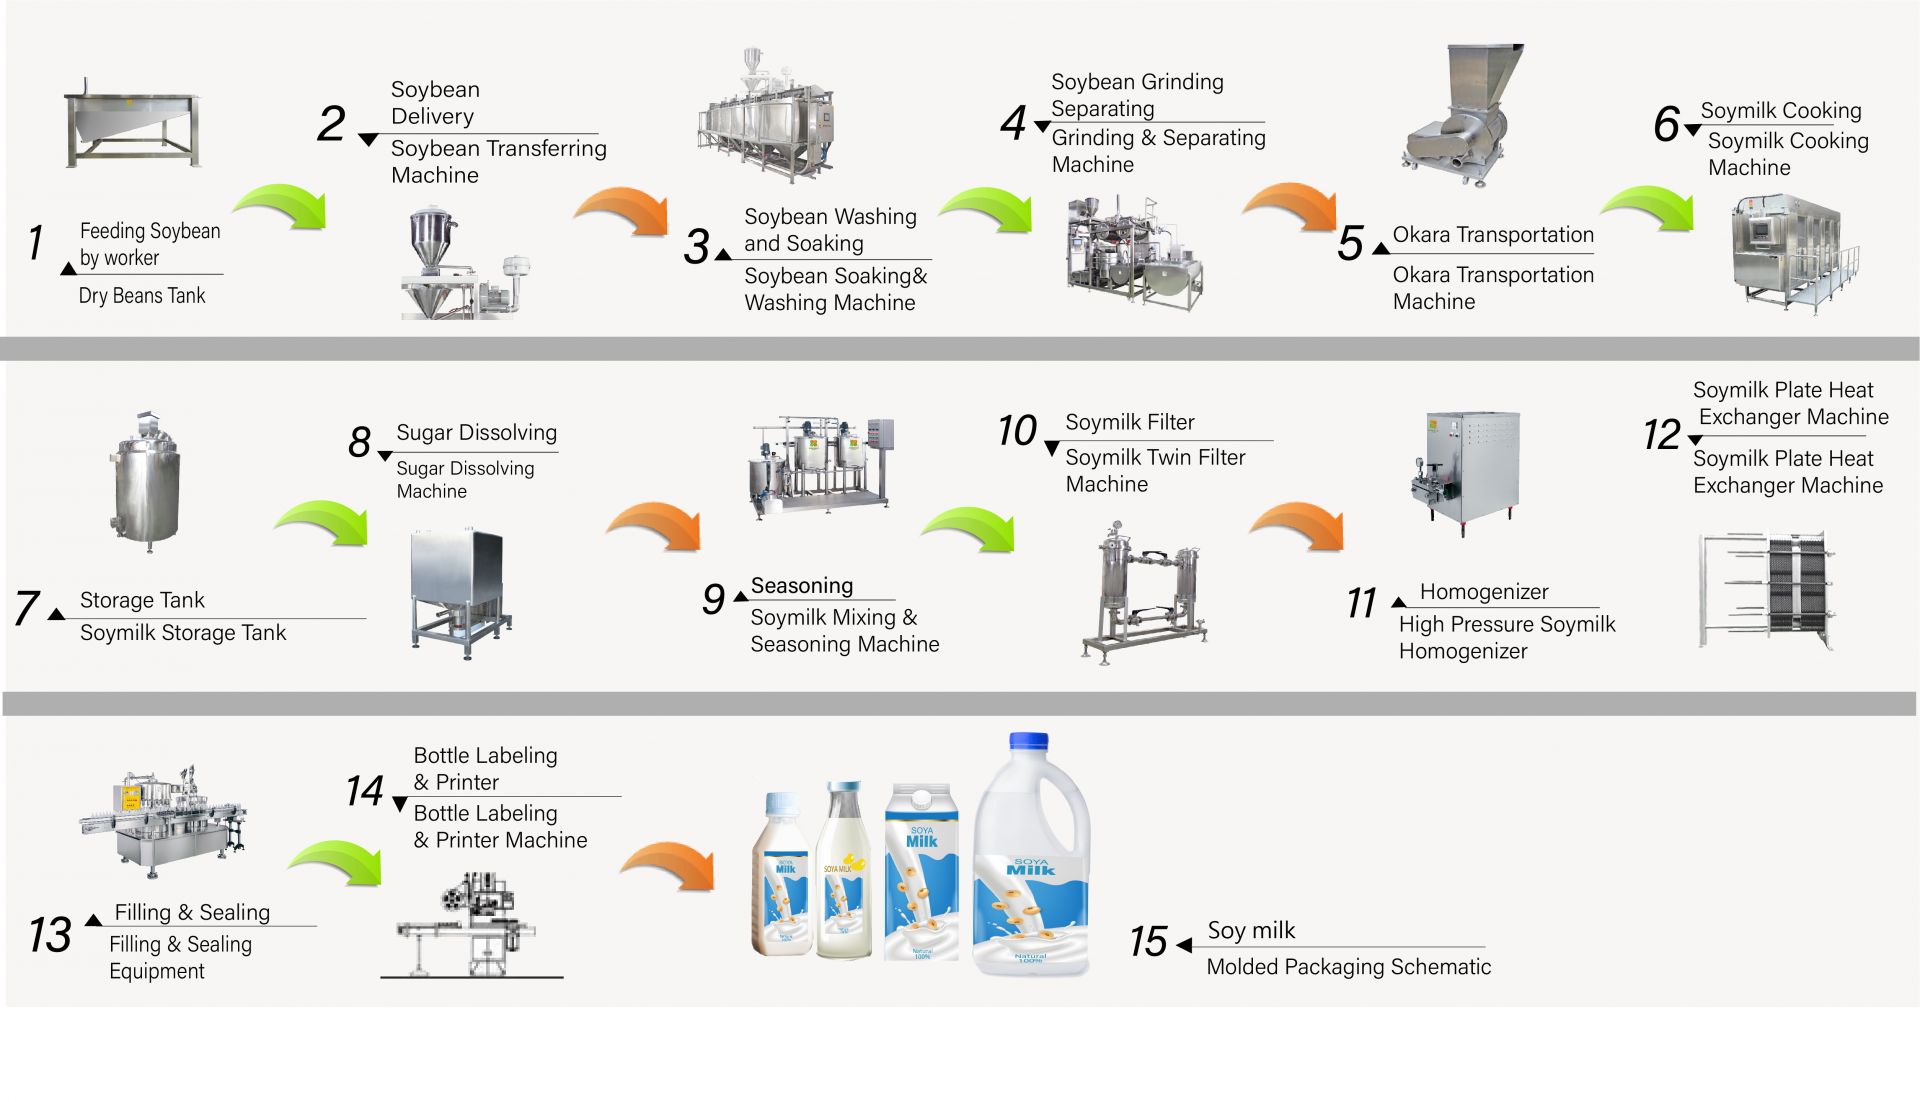 Procesul de fabricare a laptelui de soia în fabrică, Cum să faci lapte de soia, Producerea laptelui de soia, diagrama de flux a laptelui de soia, Procesul de fabricare a laptelui de soia, procesul de fabricare a laptelui de soia, procesul de fabricare a laptelui de soia, diagrama de flux a procesului de fabricare a laptelui de soia, Fluxul de procesare a laptelui de soia, Procesul de procesare a laptelui de soia, producția de lapte de soia, diagrama de flux a producției de lapte de soia, procesul de producție a laptelui de soia, diagrama de flux a procesării soia, Mașină automată de lapte de soia, Mașină automată de fabricat lapte de soia, Fabricant de Tofu ușor, Producția industrială de lapte de soia, Fabricarea industrială a laptelui de soia, Mașină industrială de lapte de soia, Mașină industrială de tofu, mașină de lapte vegetal, mașină de producție de lapte vegetal, producție de lapte de soia, Mașină de băuturi din soia, Linie de producție a băuturilor din soia, Mașină de băuturi din soia, mașină comercială de producție a laptelui de soia și tofu, mașină de producție a laptelui de soia și tofu, echipamente și utilaje pentru băuturi din lapte de soia, Mașină de gătit lapte de soia, fabrică de lapte de soia, mașină de lapte de soia, mașină de lapte de soia comercială, Mașină de lapte de soia fabricată în Taiwan, Mașină și echipament de lapte de soia, Fabricant de lapte de soia, Mașină de fabricat lapte de soia, Producători de lapte de soia, Producție de lapte de soia, echipamente de producție de lapte de soia, fabrică de producție de lapte de soia, linie de producție de lapte de soia, prețul mașinii de fabricat lapte de soia, mașină de prelucrare a soia, fabrică de lapte de soia, mașină de lapte de soia